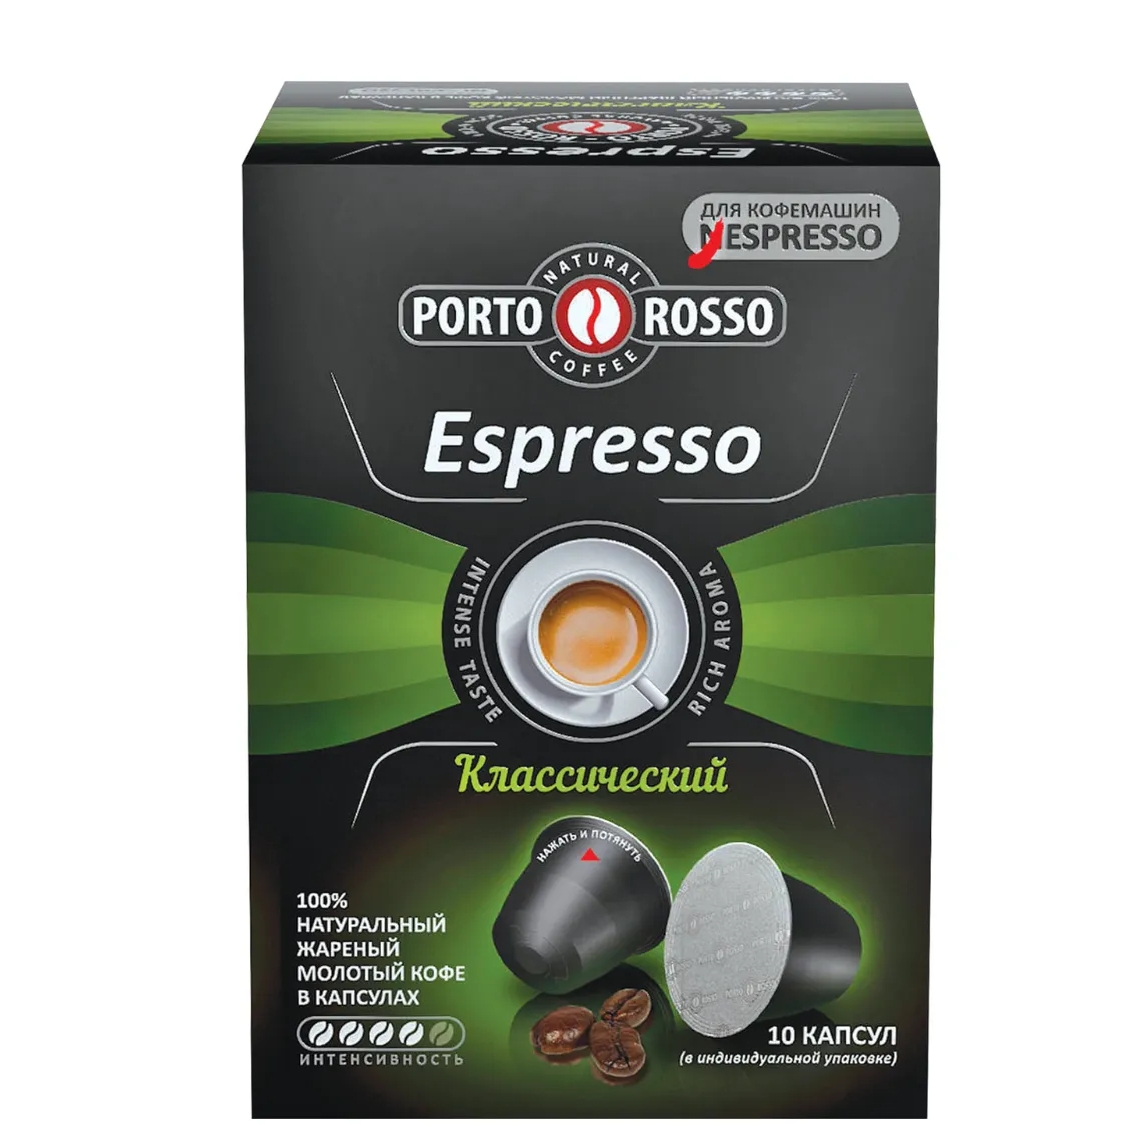 Кофе в капсулах Porto Rosso Espresso Классический, 10х5 г